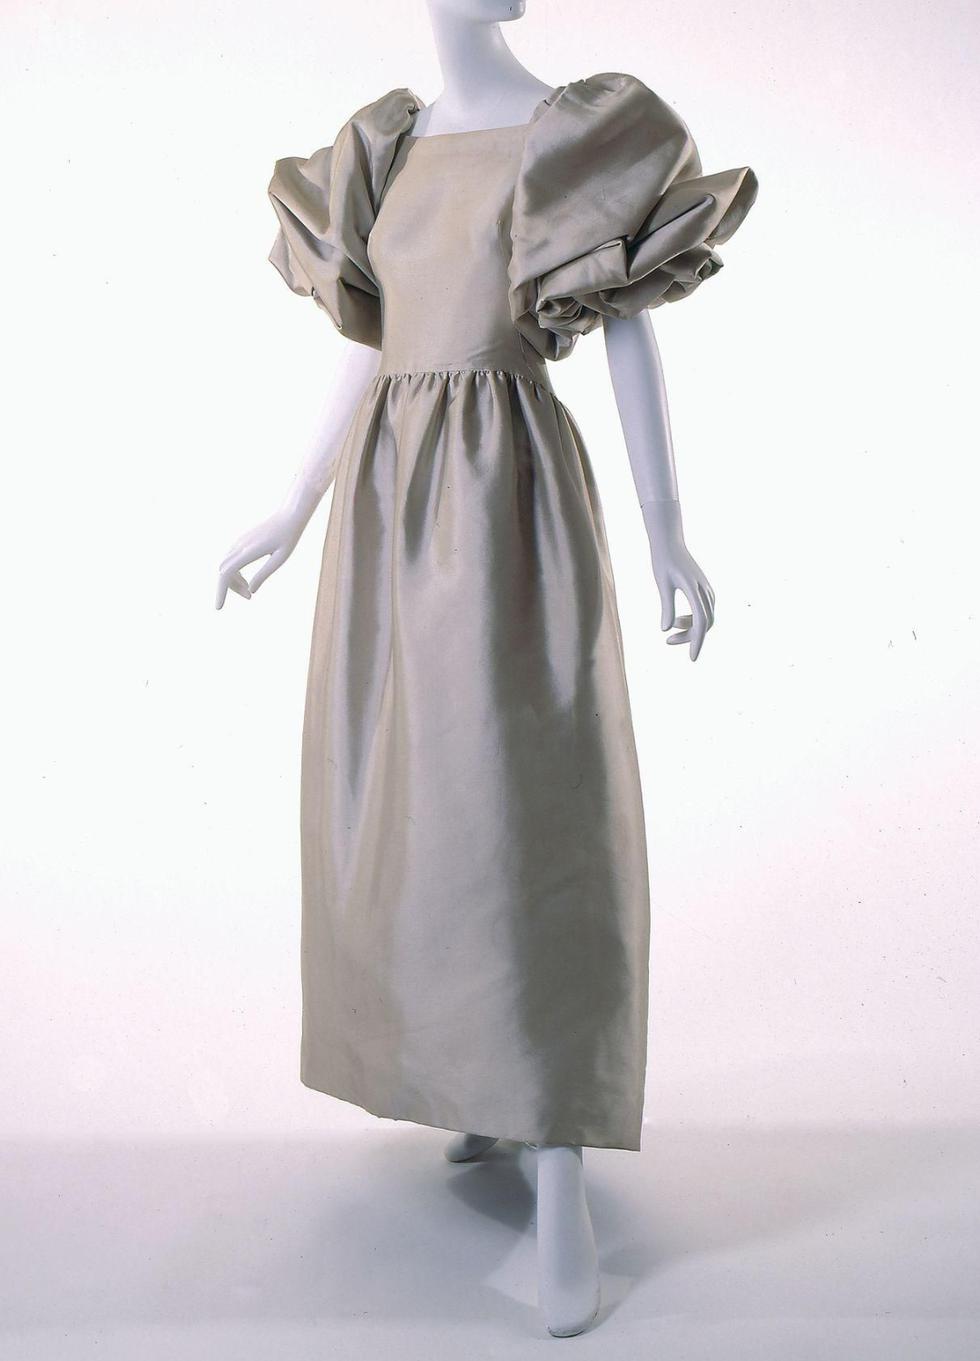 Motivada por la entonces editora de Vogue, Diana Vreeland, la diseñadora lanzó su primera colección en 1981. Este vestido de noche, en tono crudo y elaboradas mangas abullonadas fue la pieza más impresionante de aquella memorable colección de otoño. (Foto: FIT)